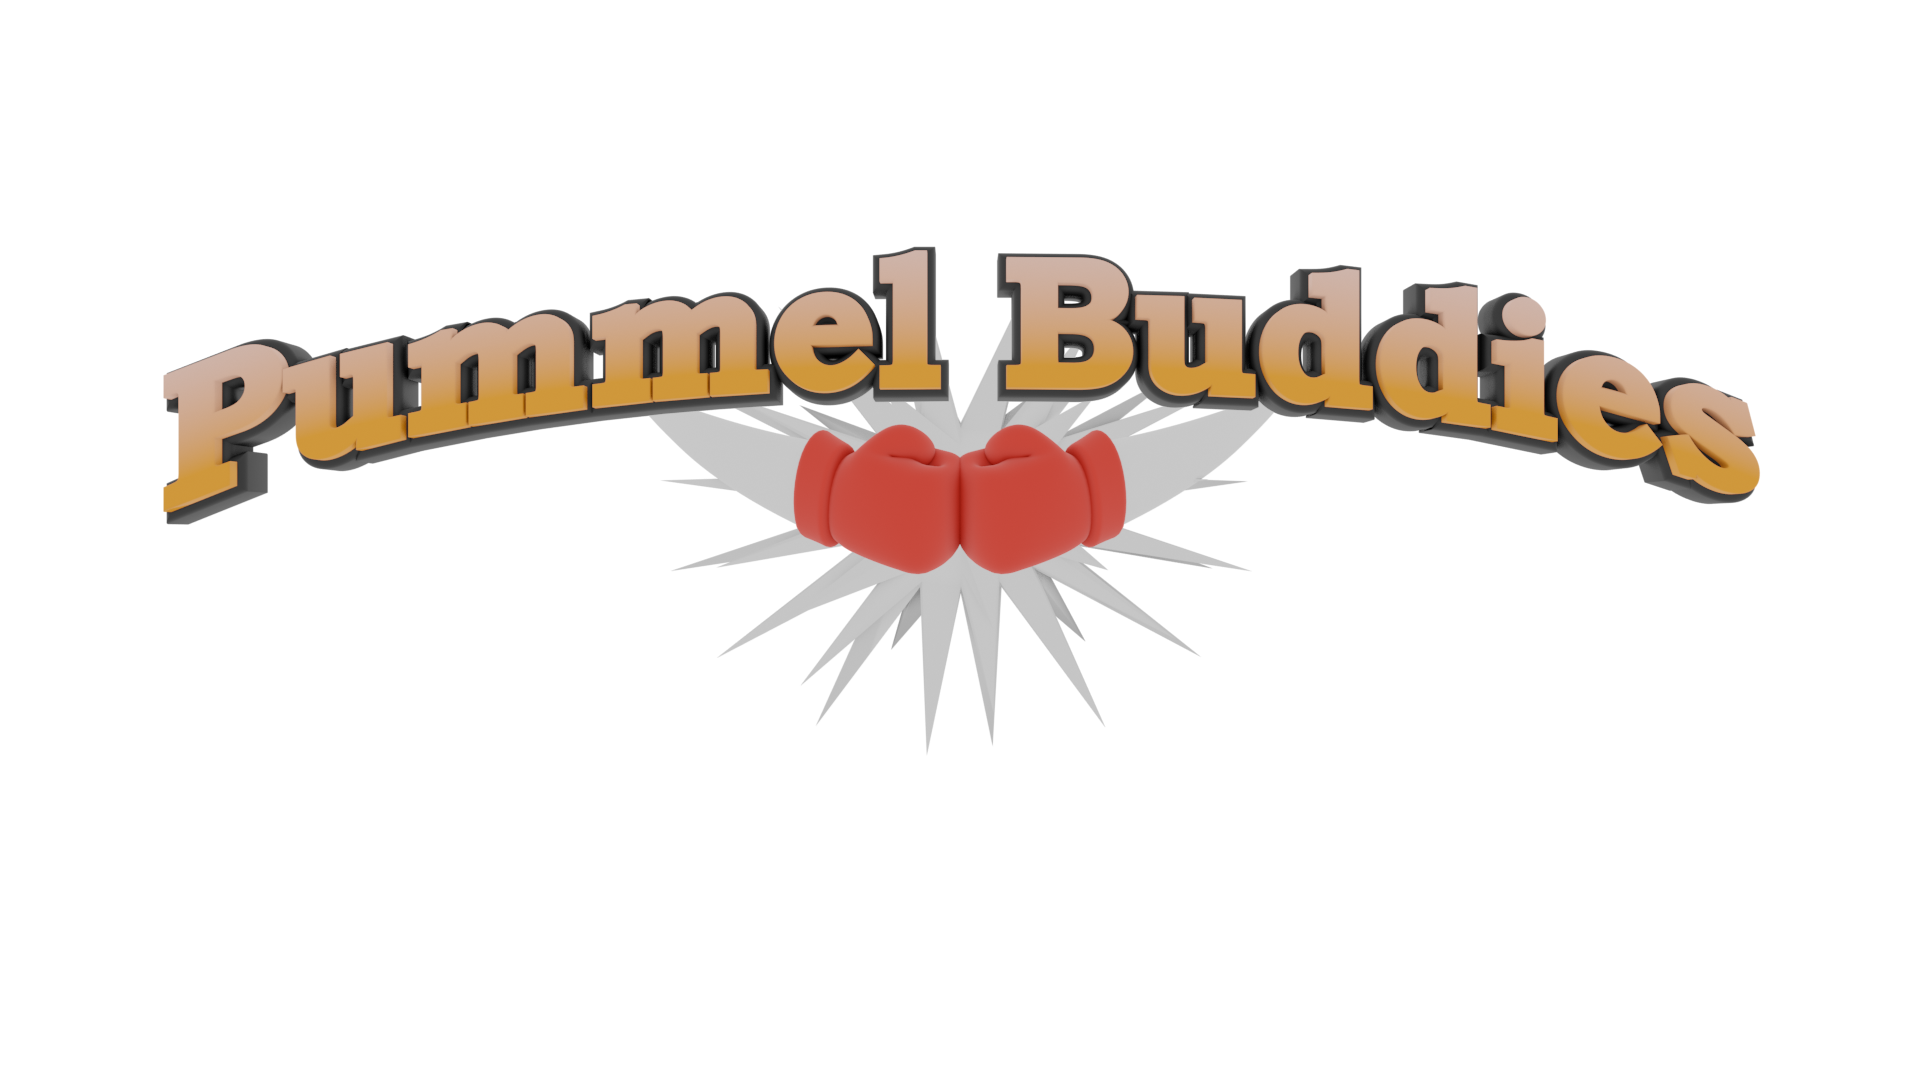 Pummel Buddies